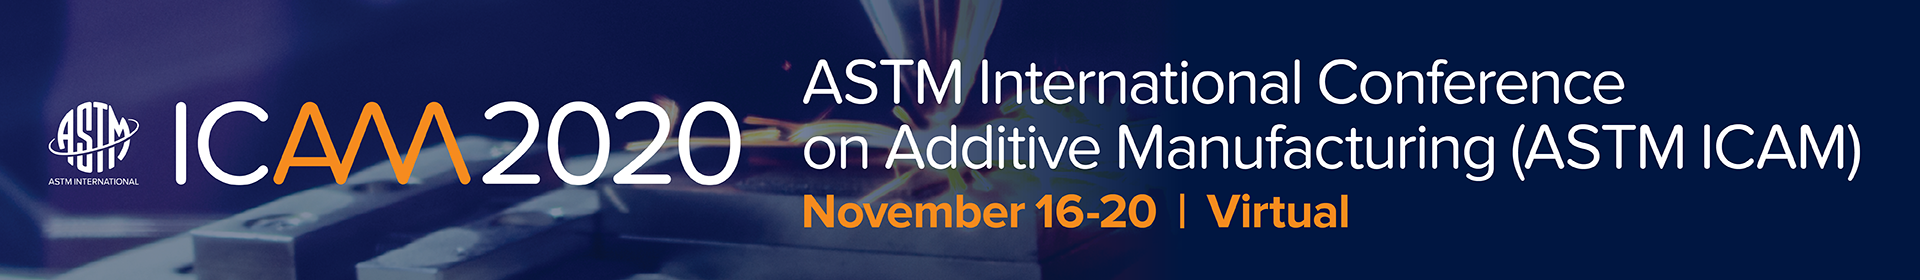 ASTM International Conference on Additive Manufacturing (ASTM ICAM 2020) Event Banner